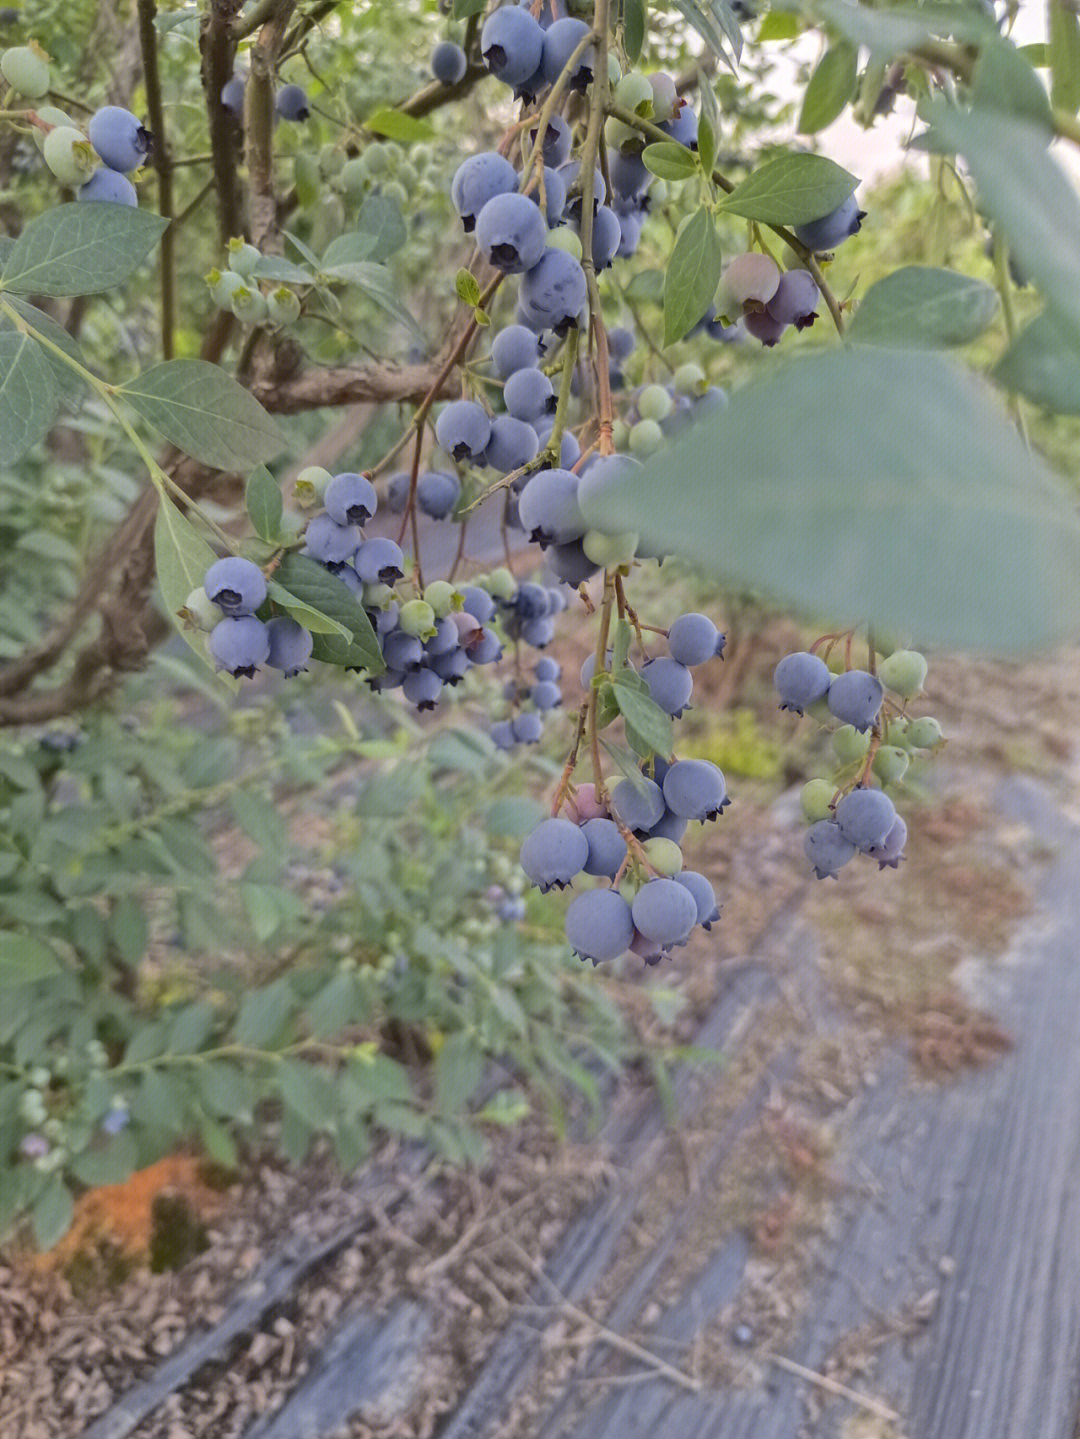 蓝莓树长白色肉芽图片图片